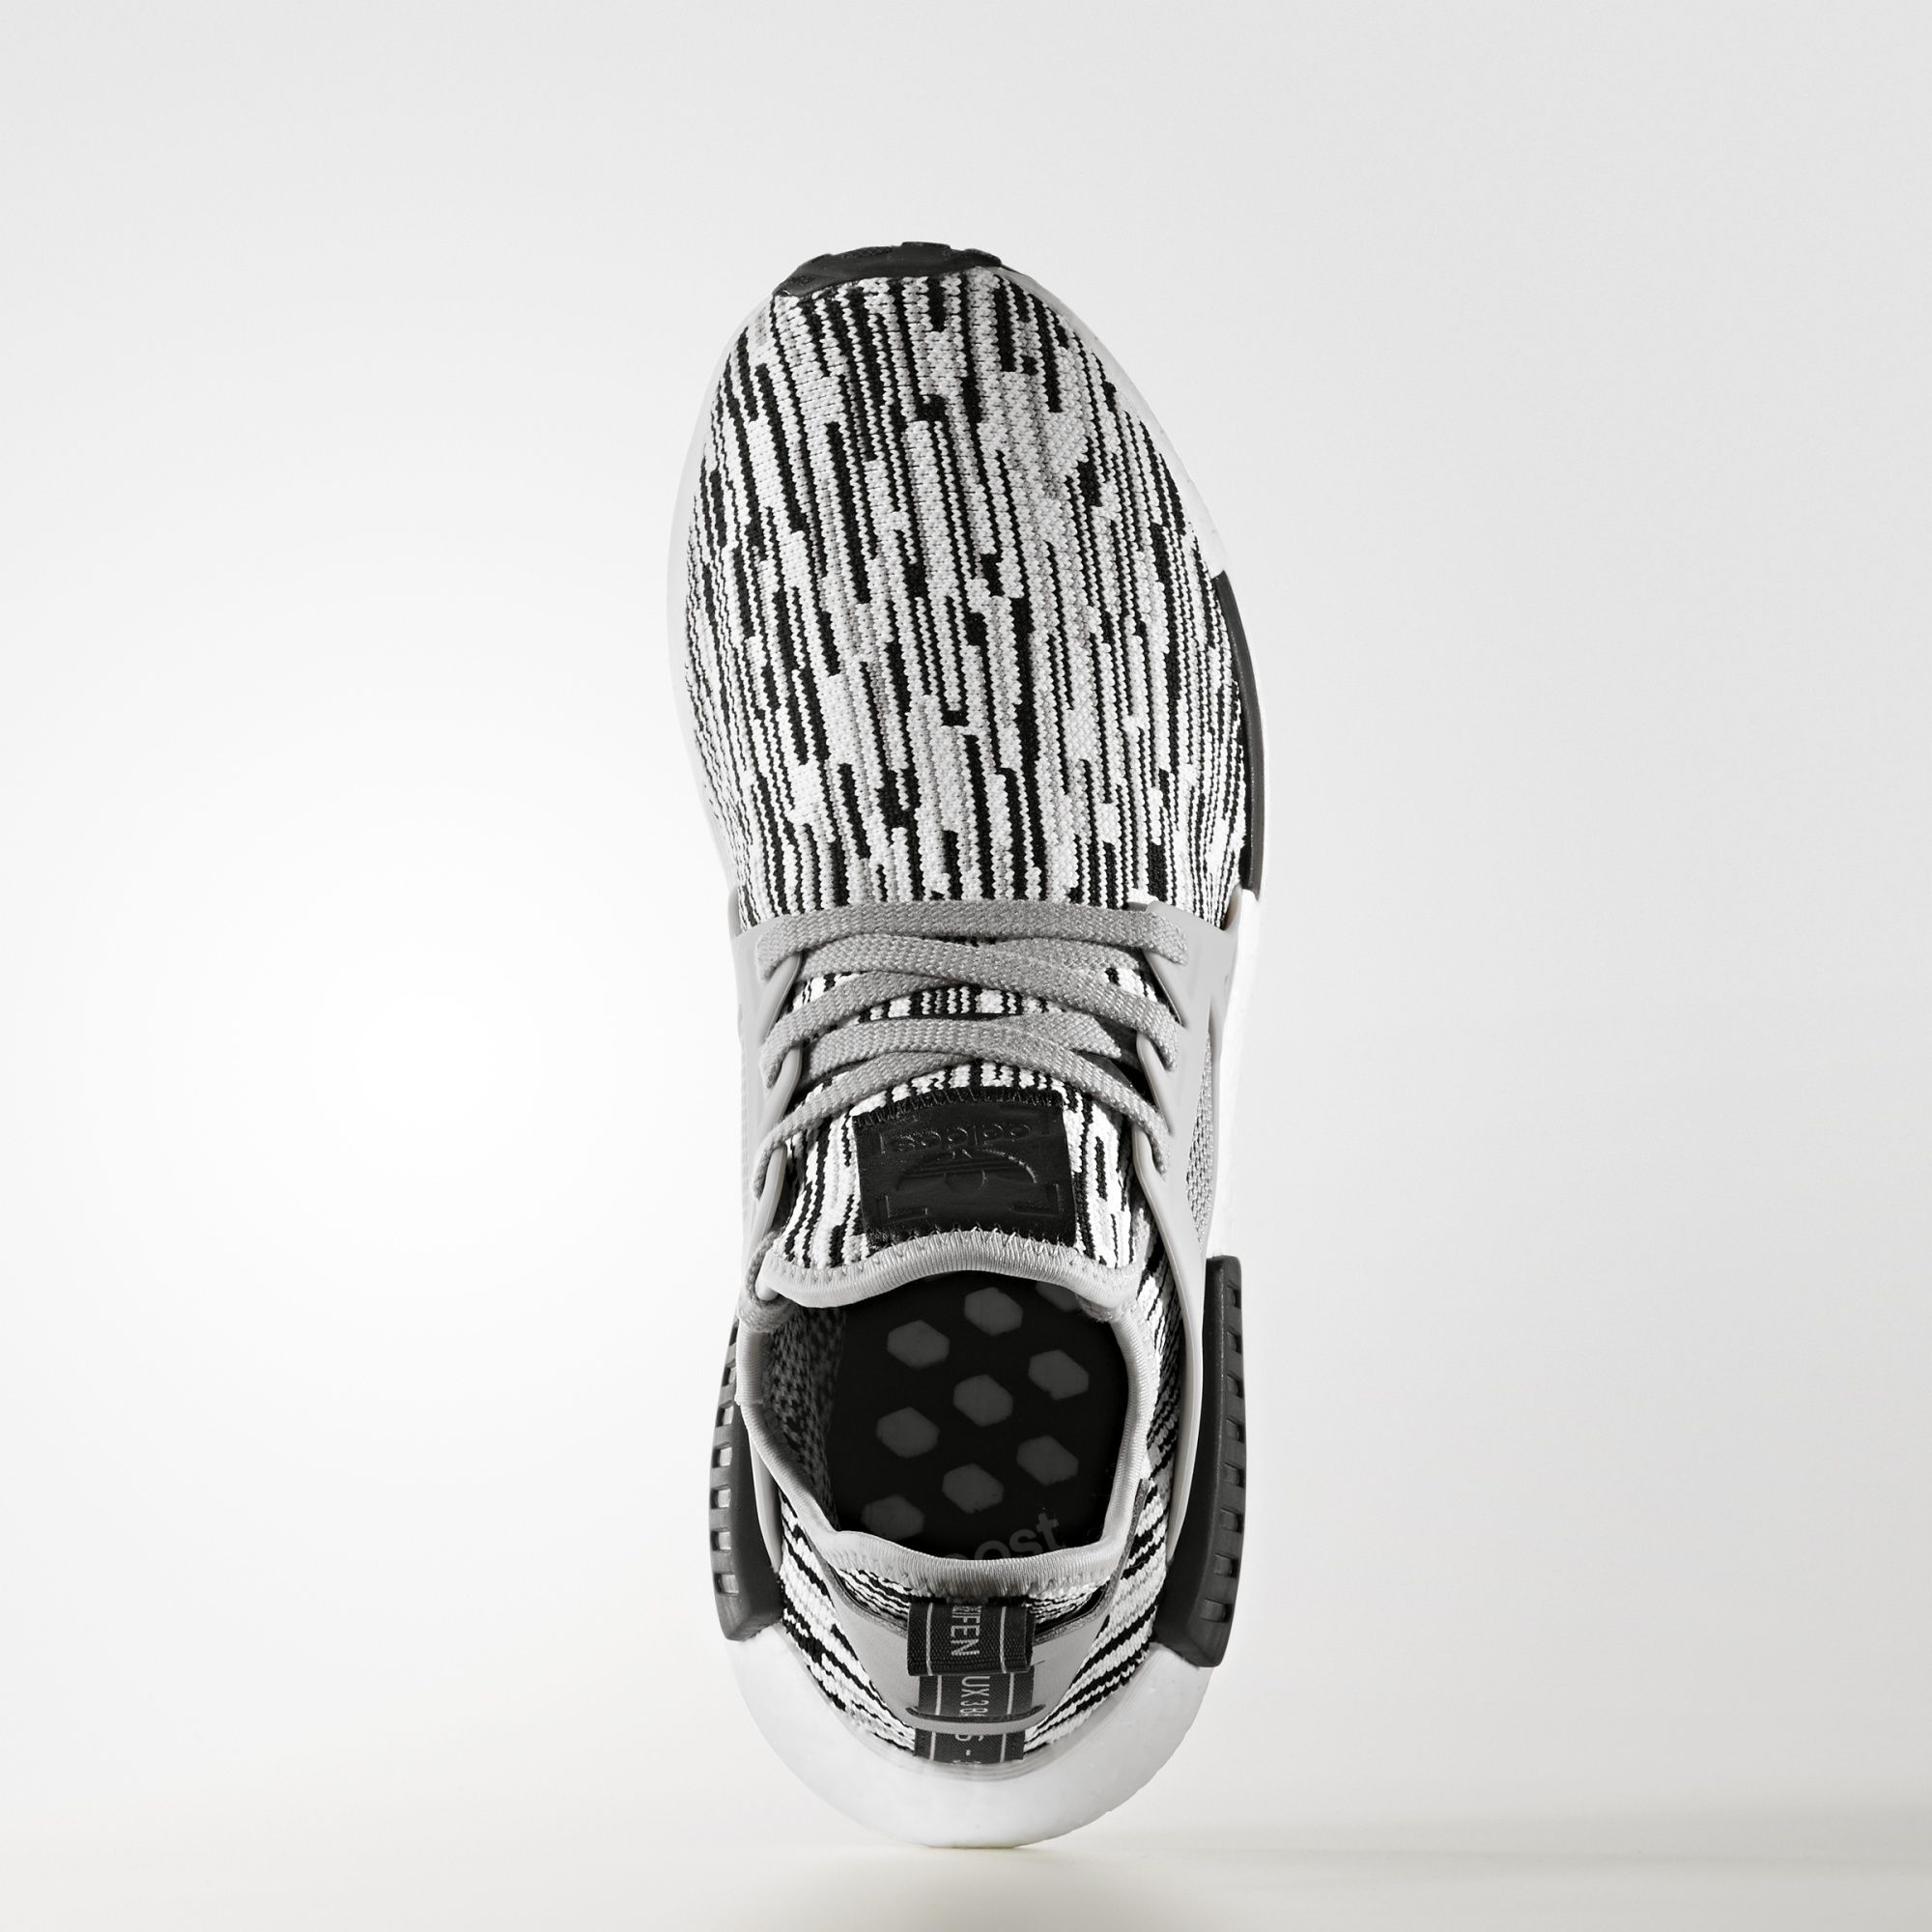 Adidas NMD_XR1
Black / Grey / White